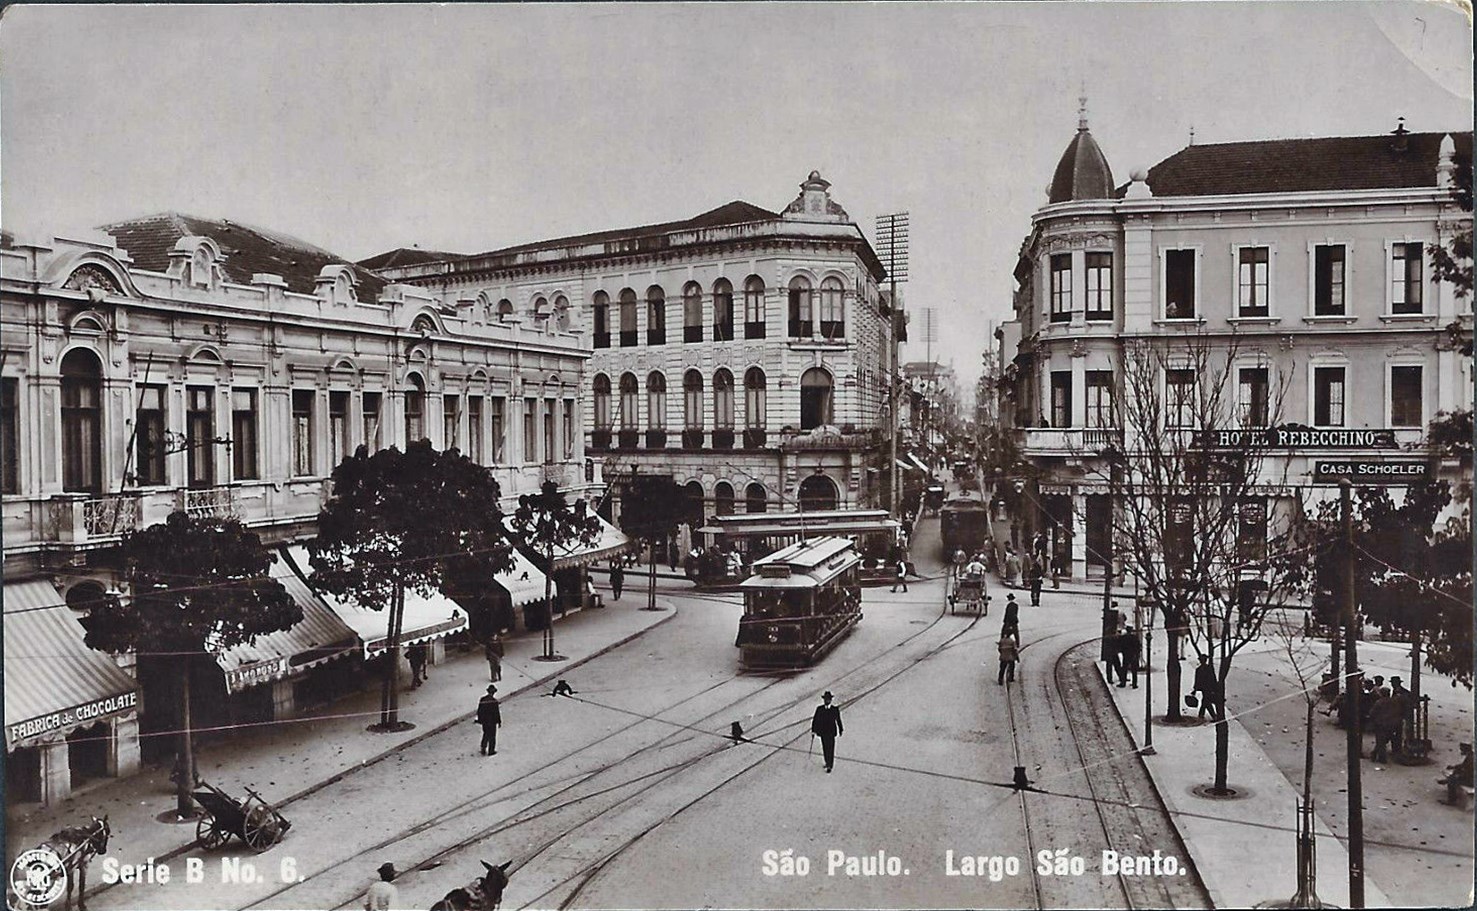 1910-largo-sc3a3o-bento-grande-hotel-paulista-d-oeste-rebechino-bondes-guilherme-gaensly-dcp